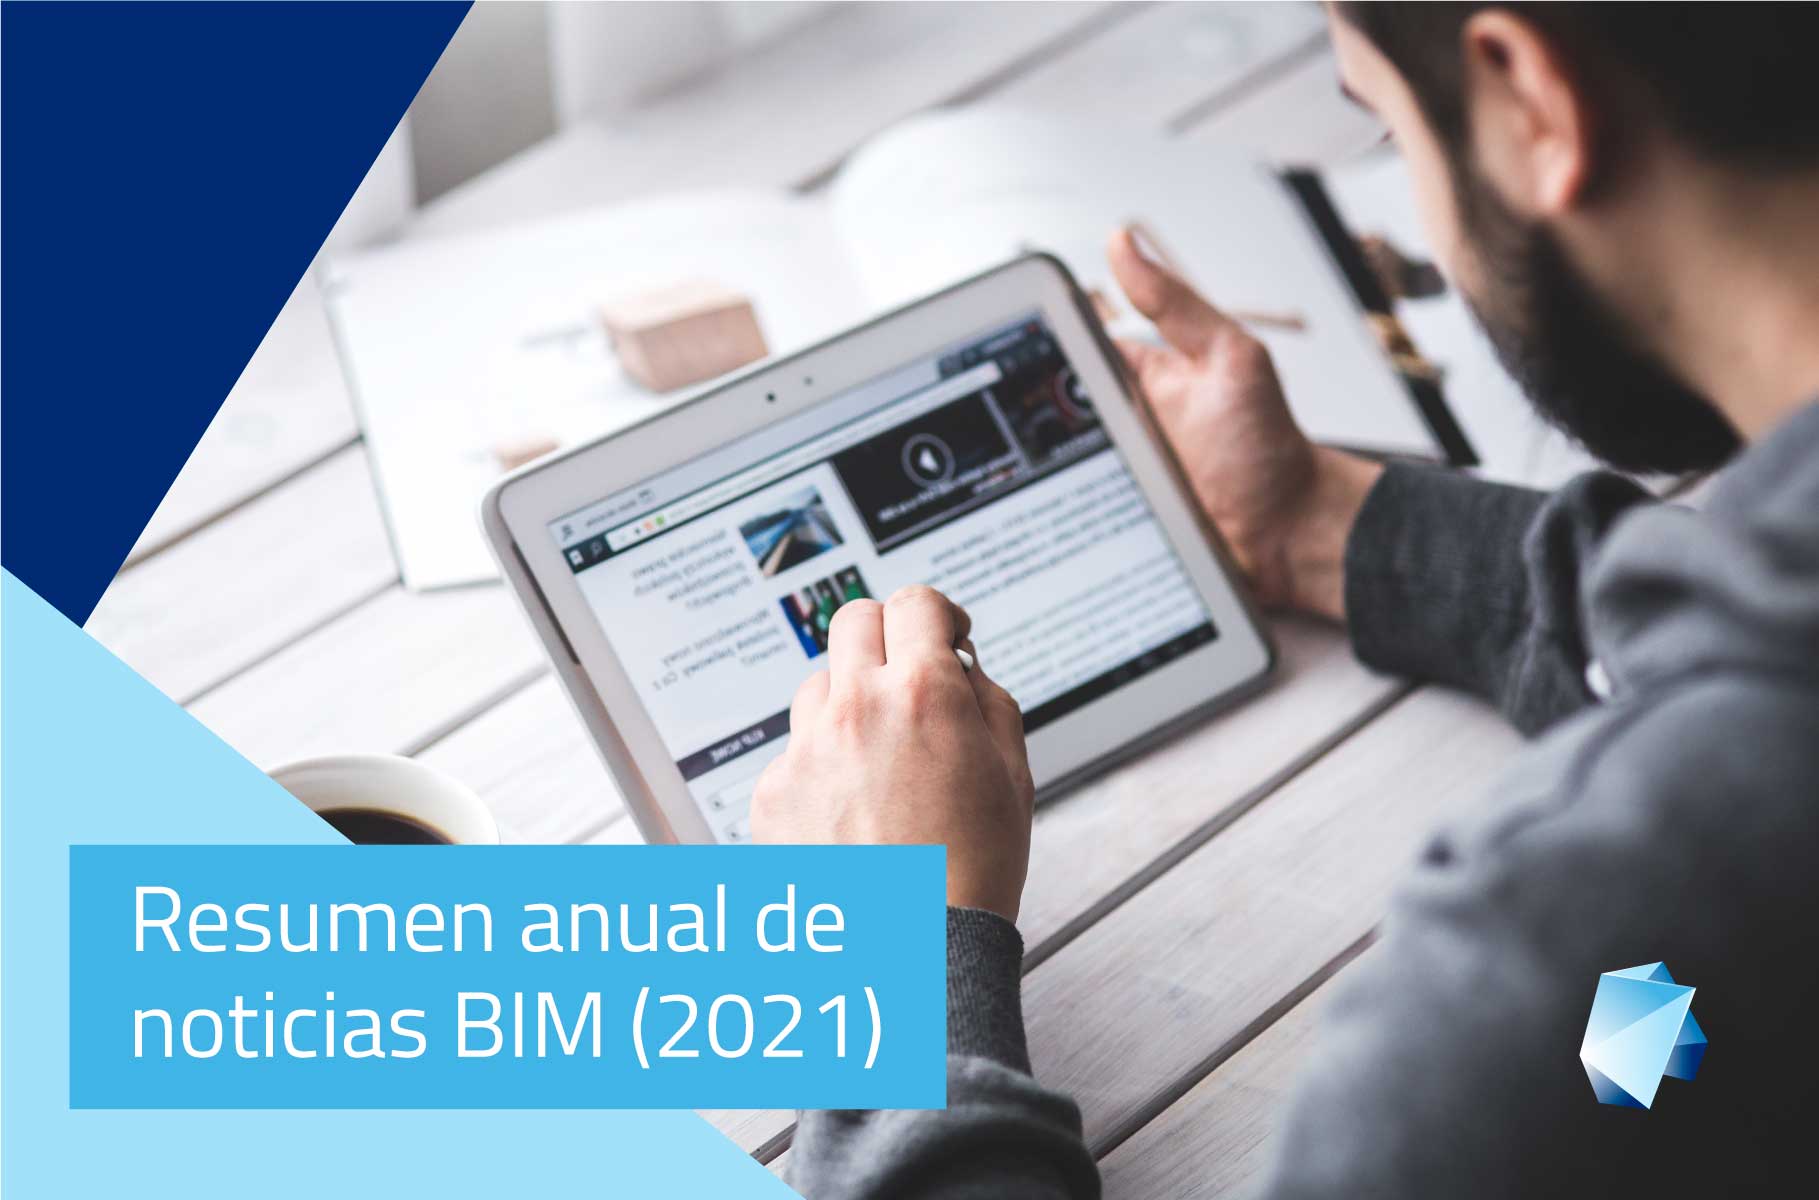 Resumen anual de noticias BIM (2021)